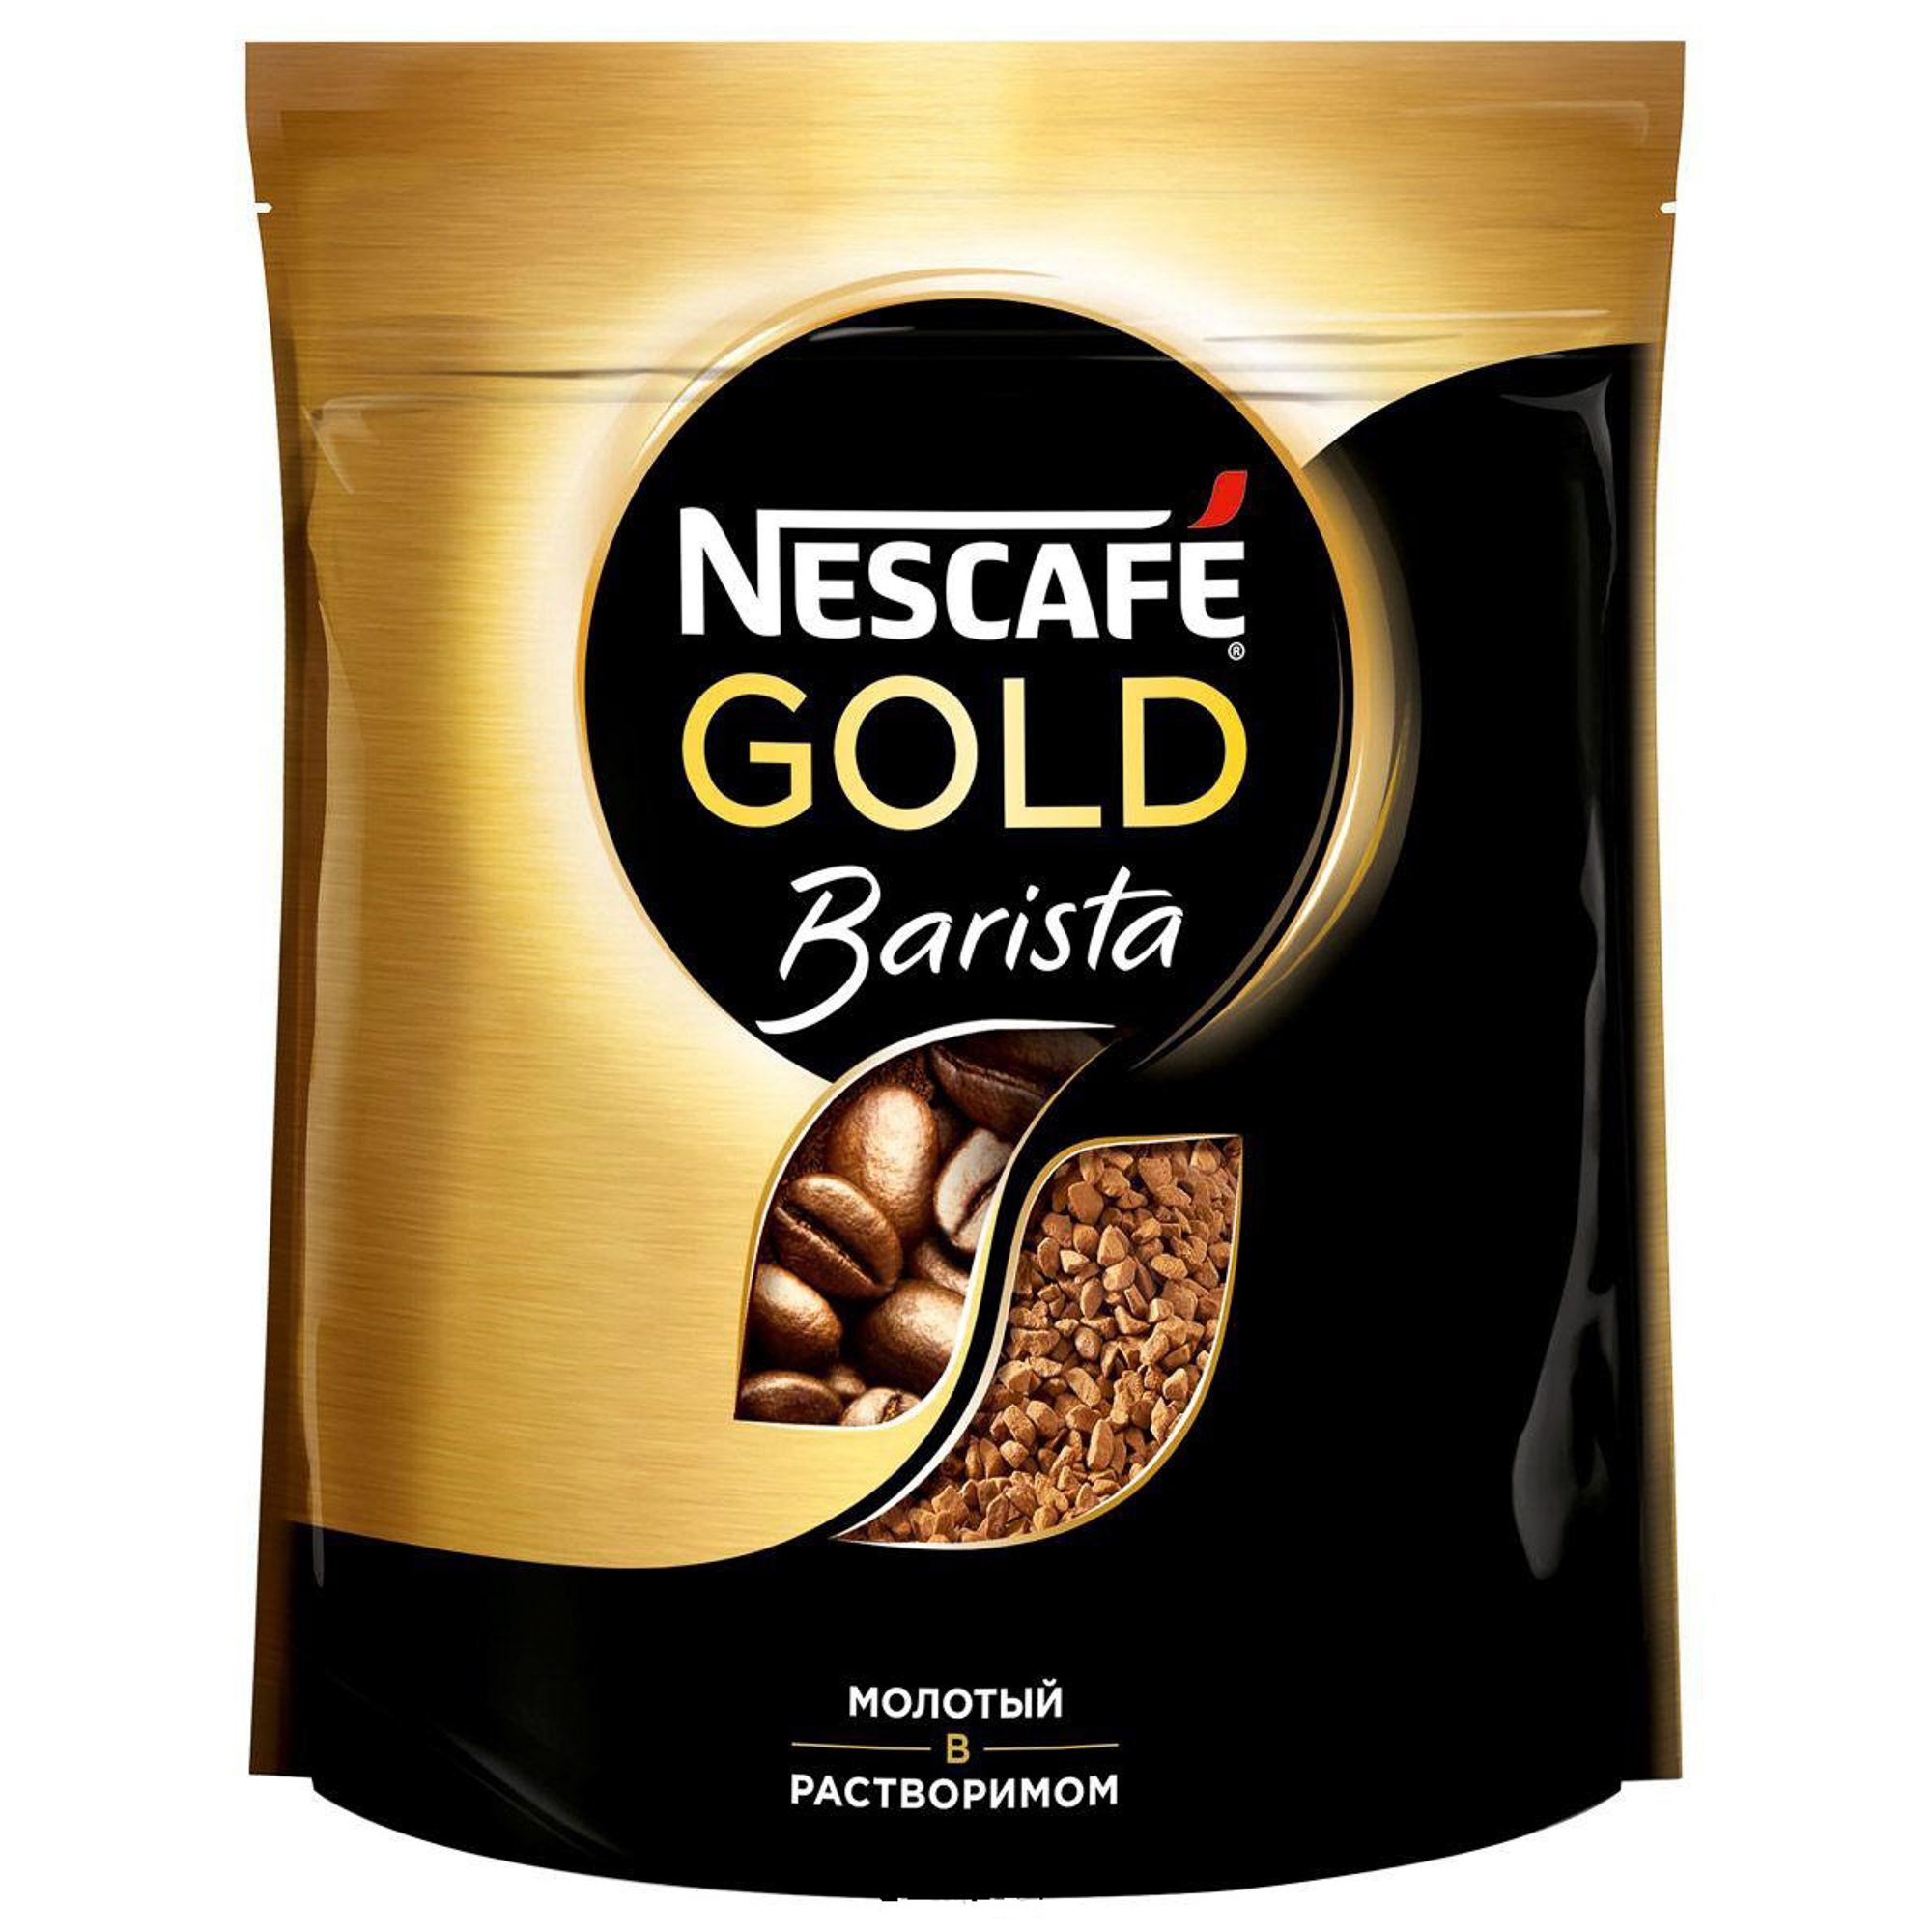 Nescafe gold сублимированный